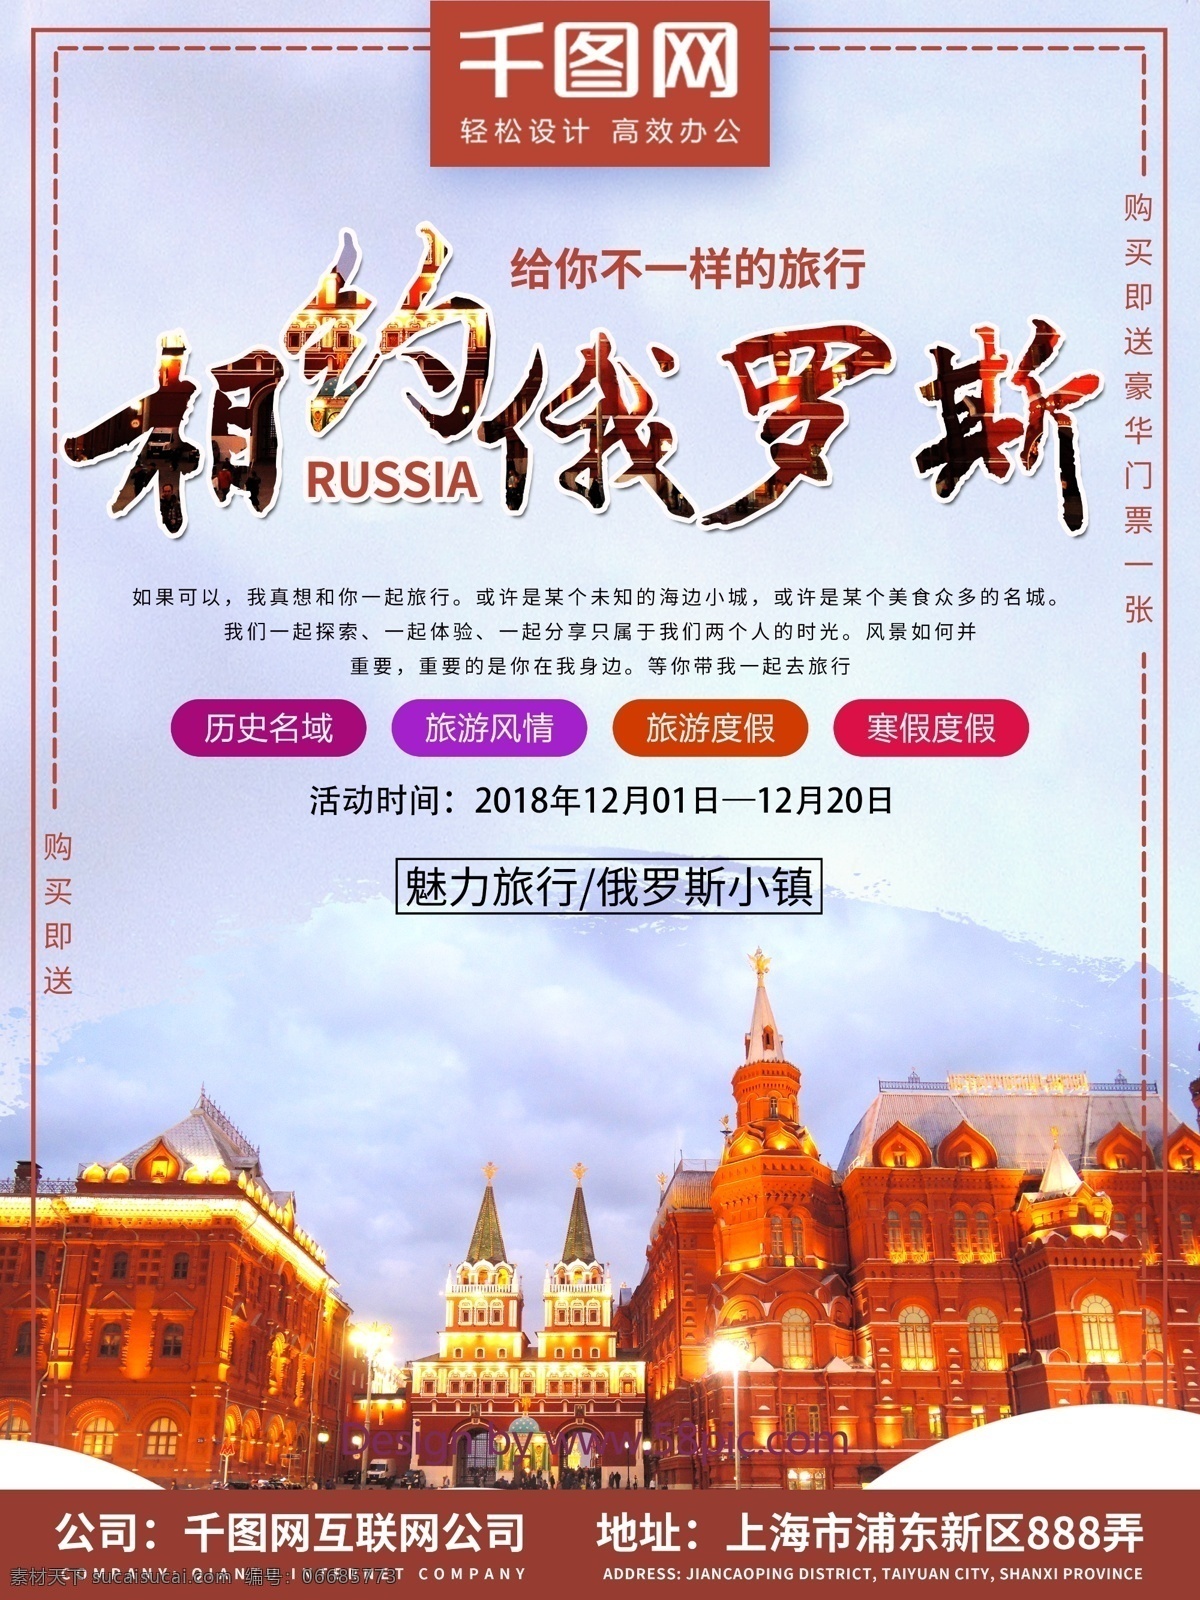 相约 俄罗斯 旅行 海报 旅游 促销海报 旅游海报 小镇 俄罗斯旅游 相约俄罗斯